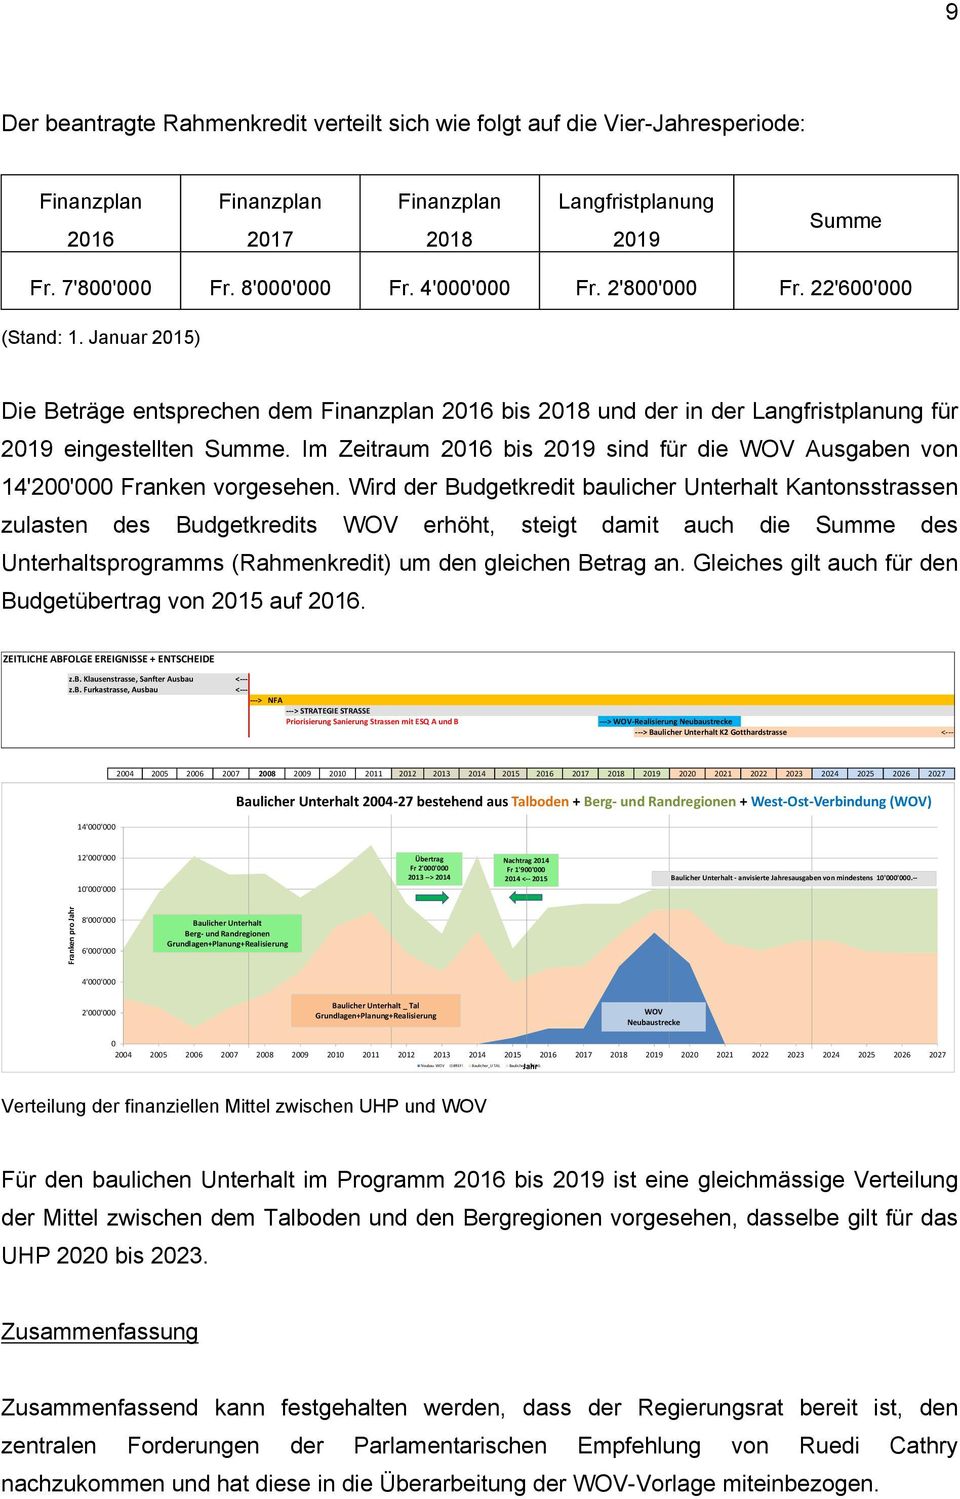 Im Zeitraum 2016 bis 2019 sind für die WOV Ausgaben von 14'200'000 Franken vorgesehen.